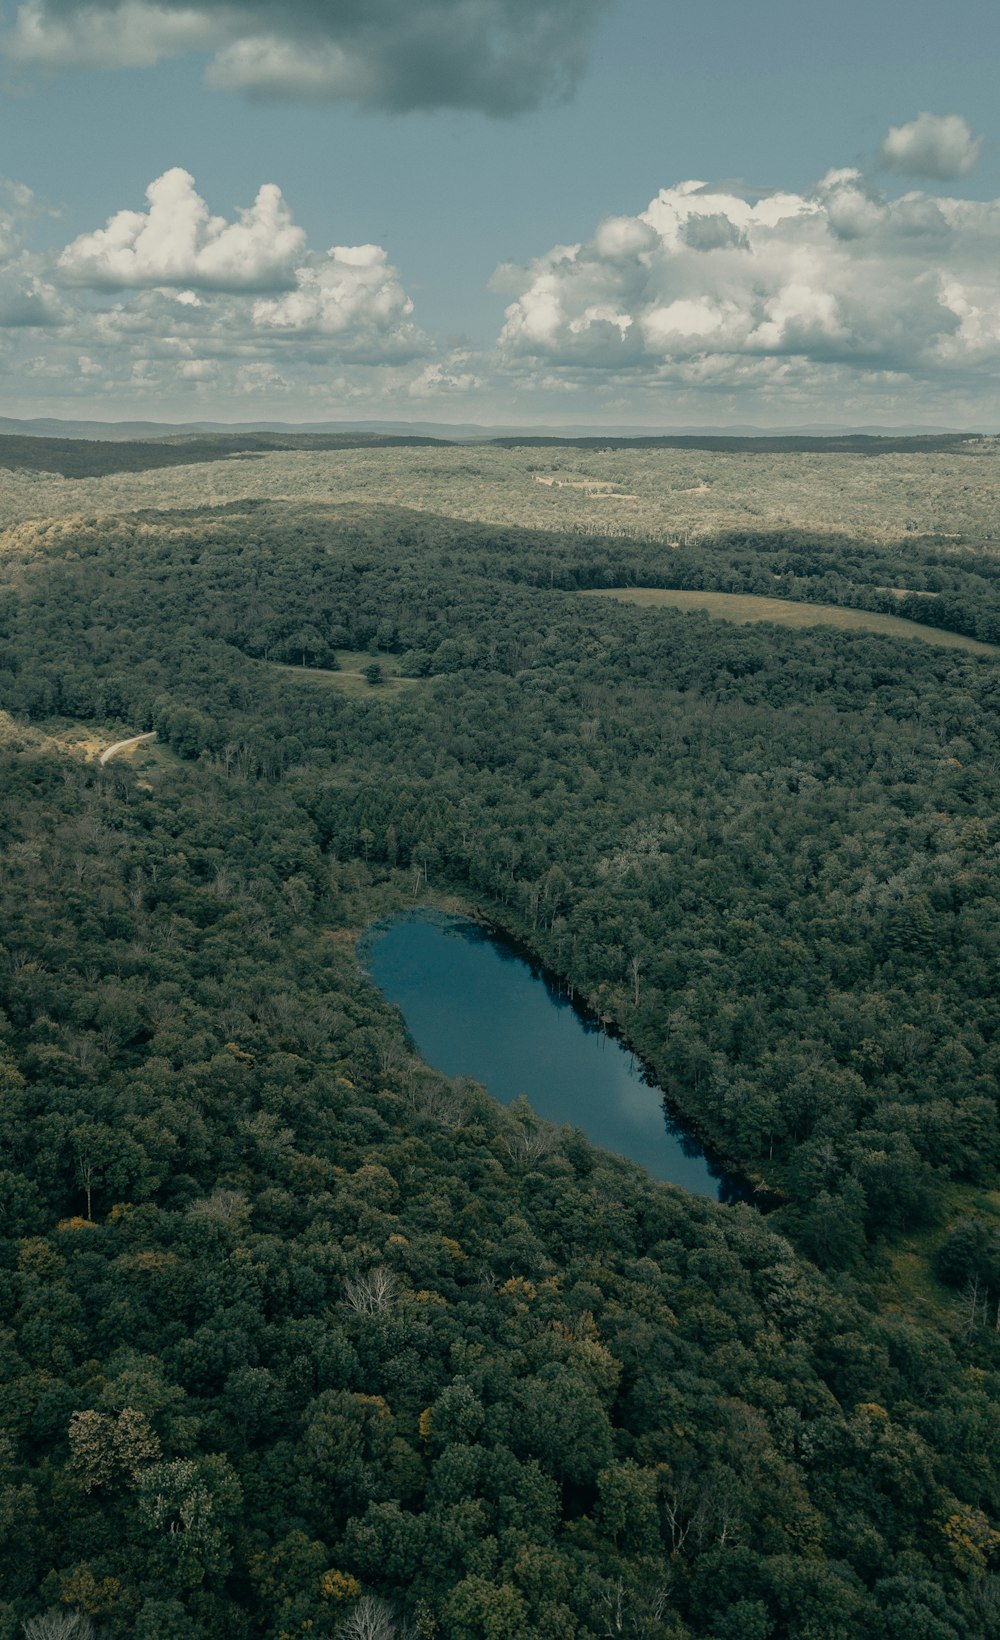 Vue aérienne du lac entouré d’arbres verts pendant la journée